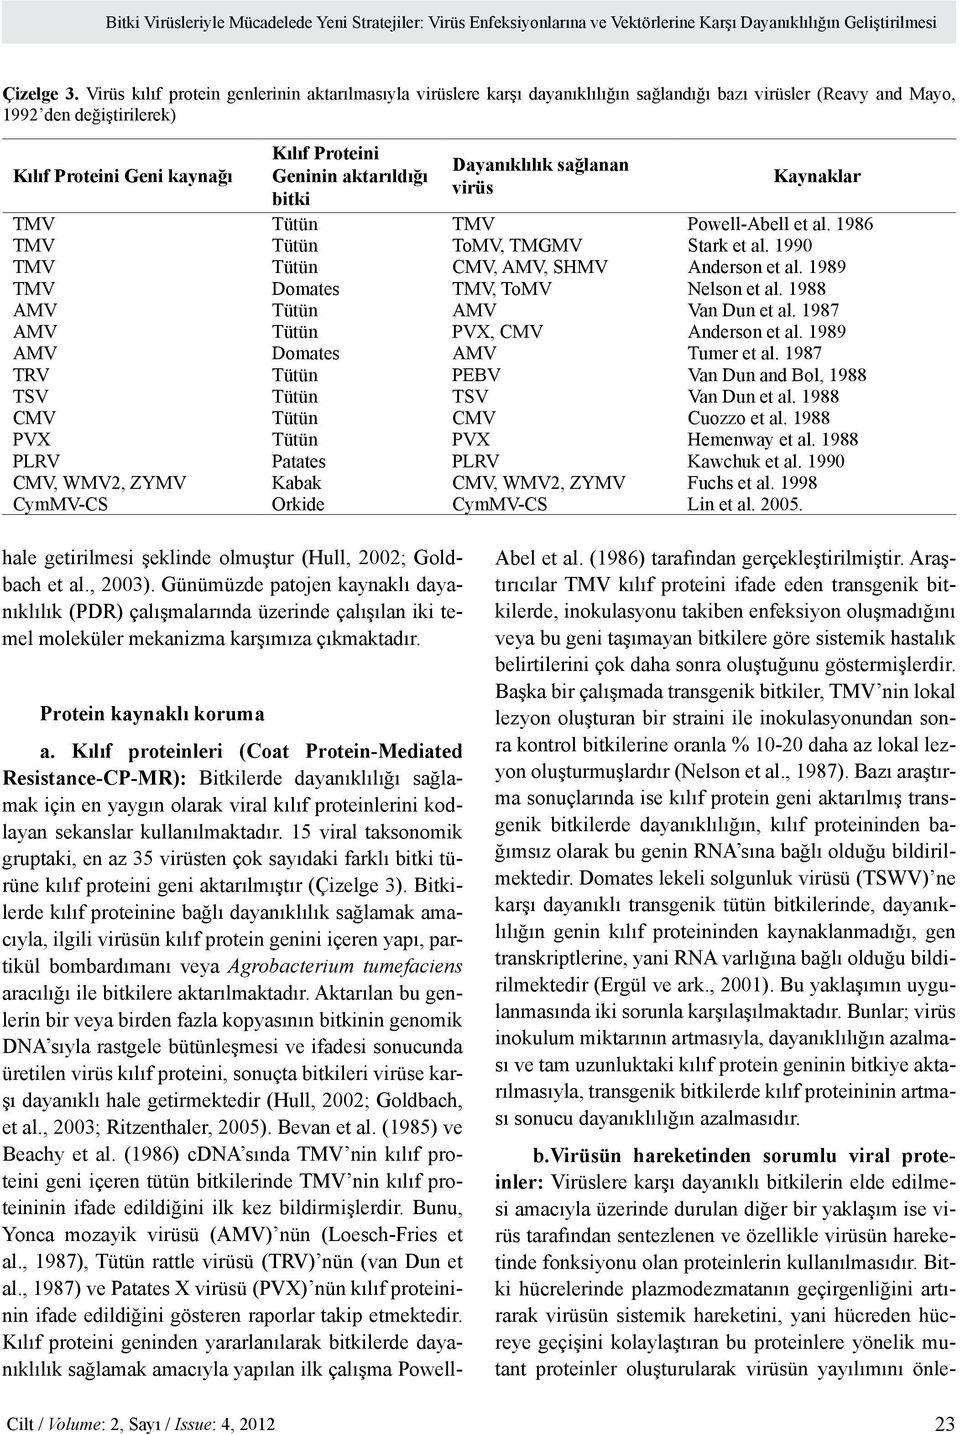 aktarıldığı bitki Dayanıklılık sağlanan virüs Kaynaklar TMV Tütün TMV Powell-Abell et al. 1986 TMV Tütün ToMV, TMGMV Stark et al. 1990 TMV Tütün CMV, AMV, SHMV Anderson et al.